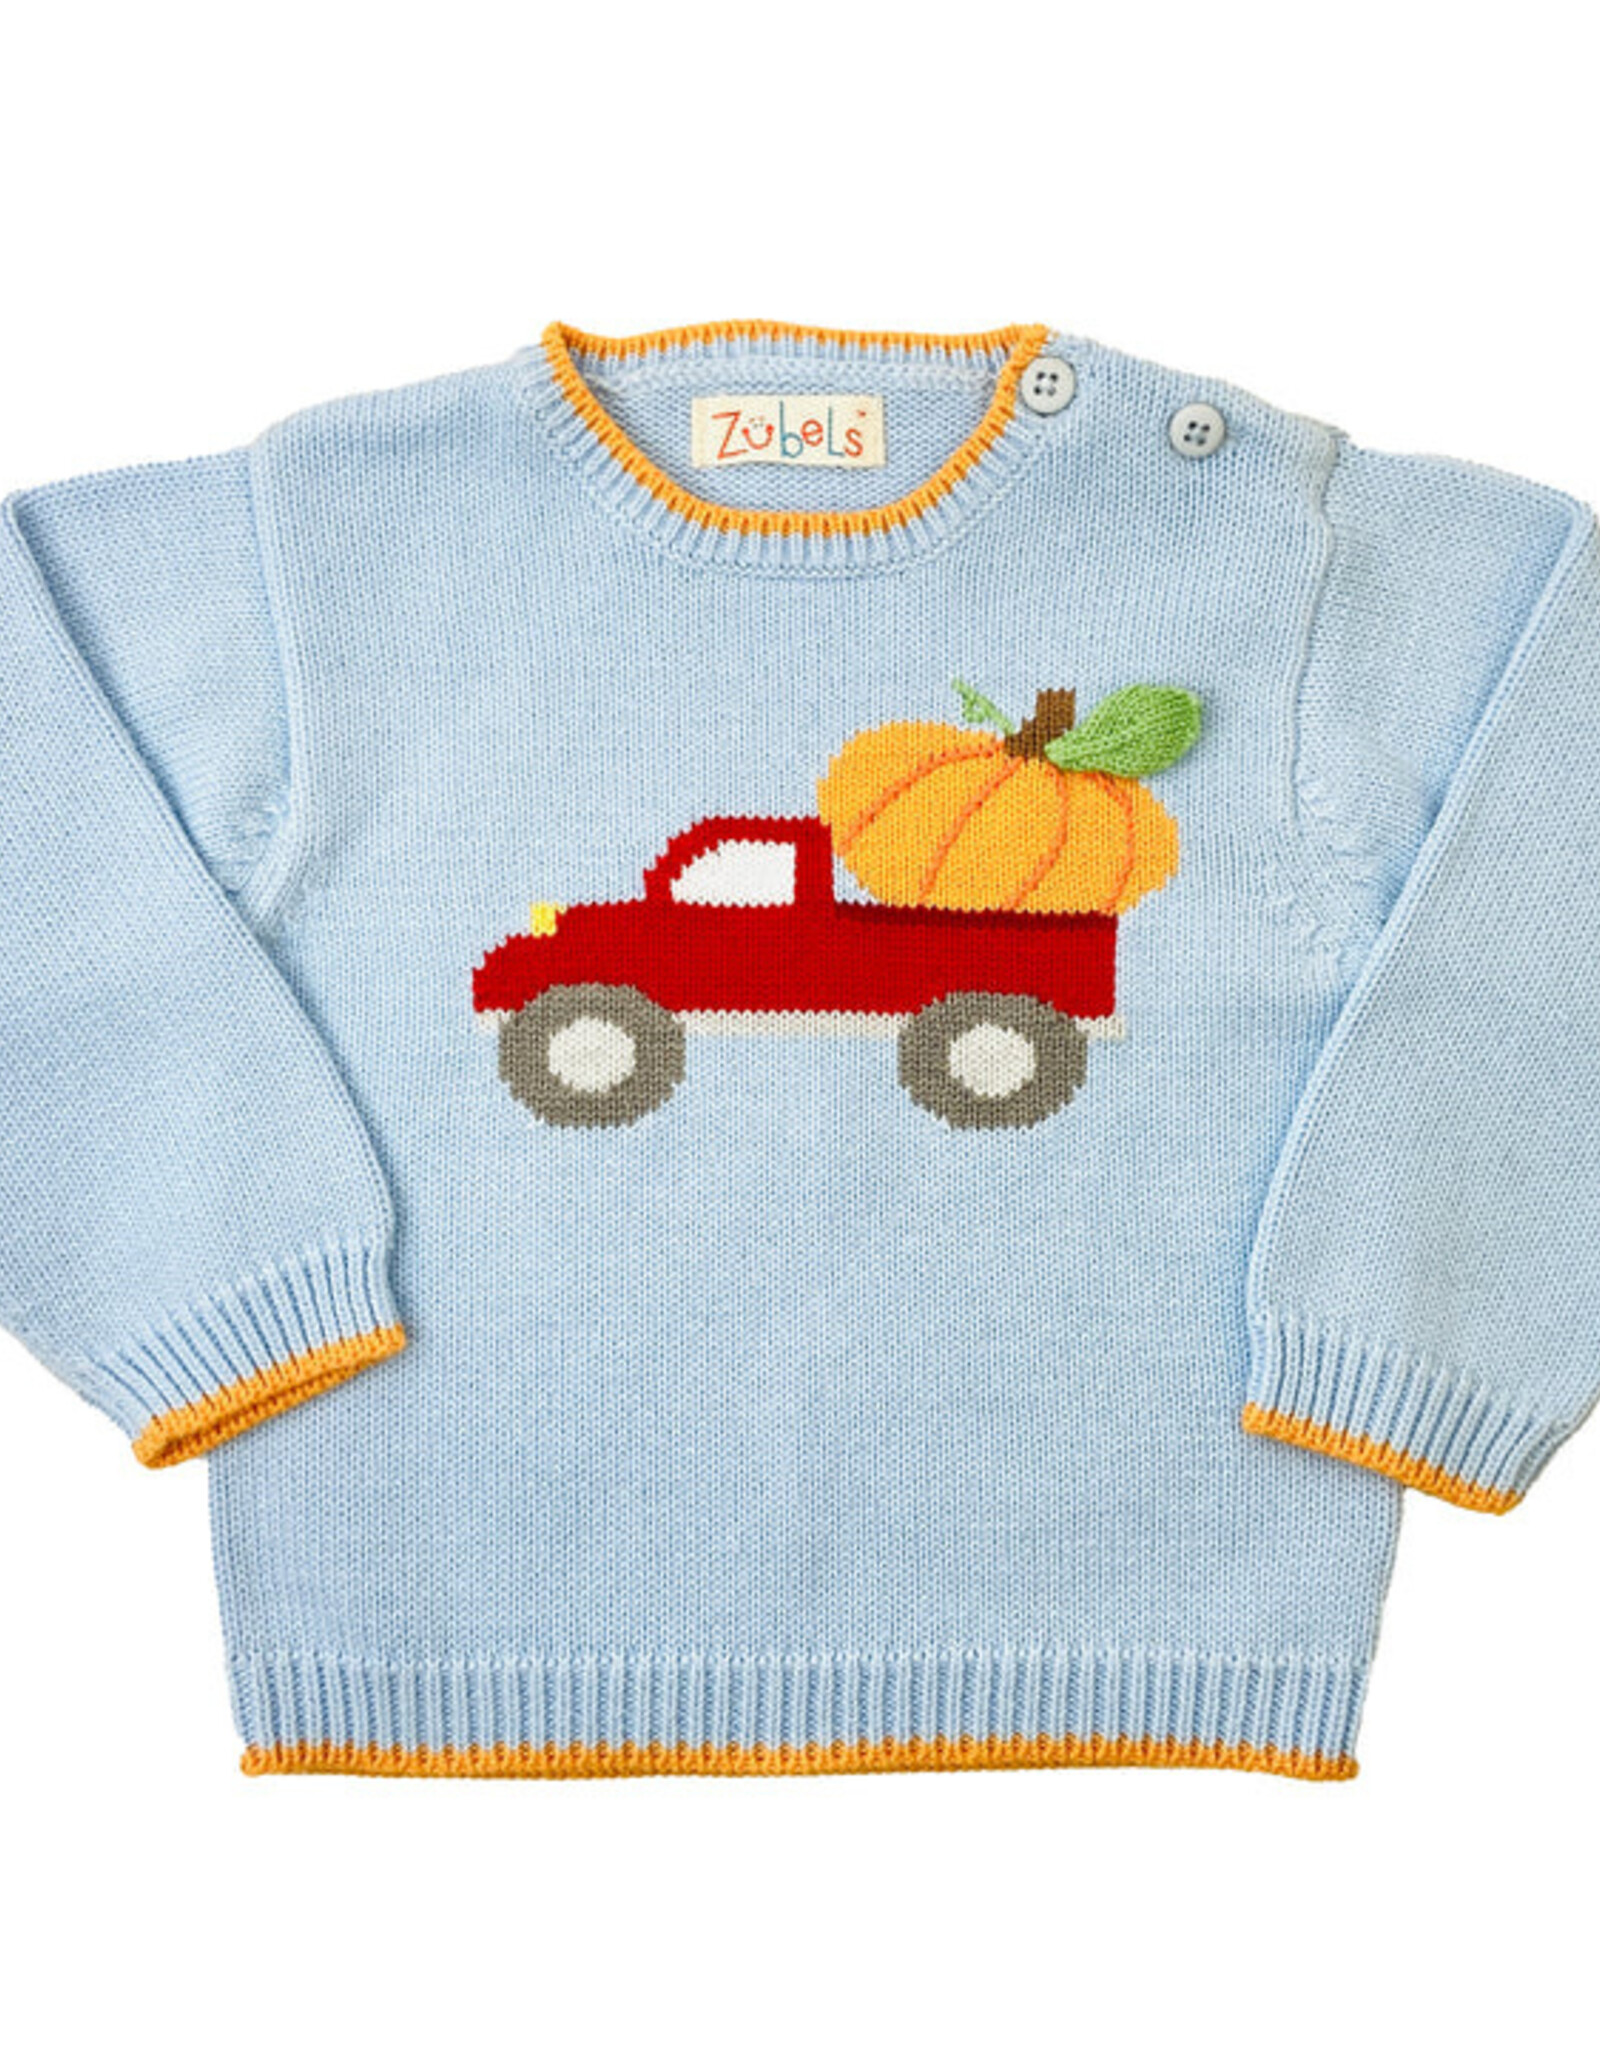 Zubels Pumpkin Truck Sweater Blue